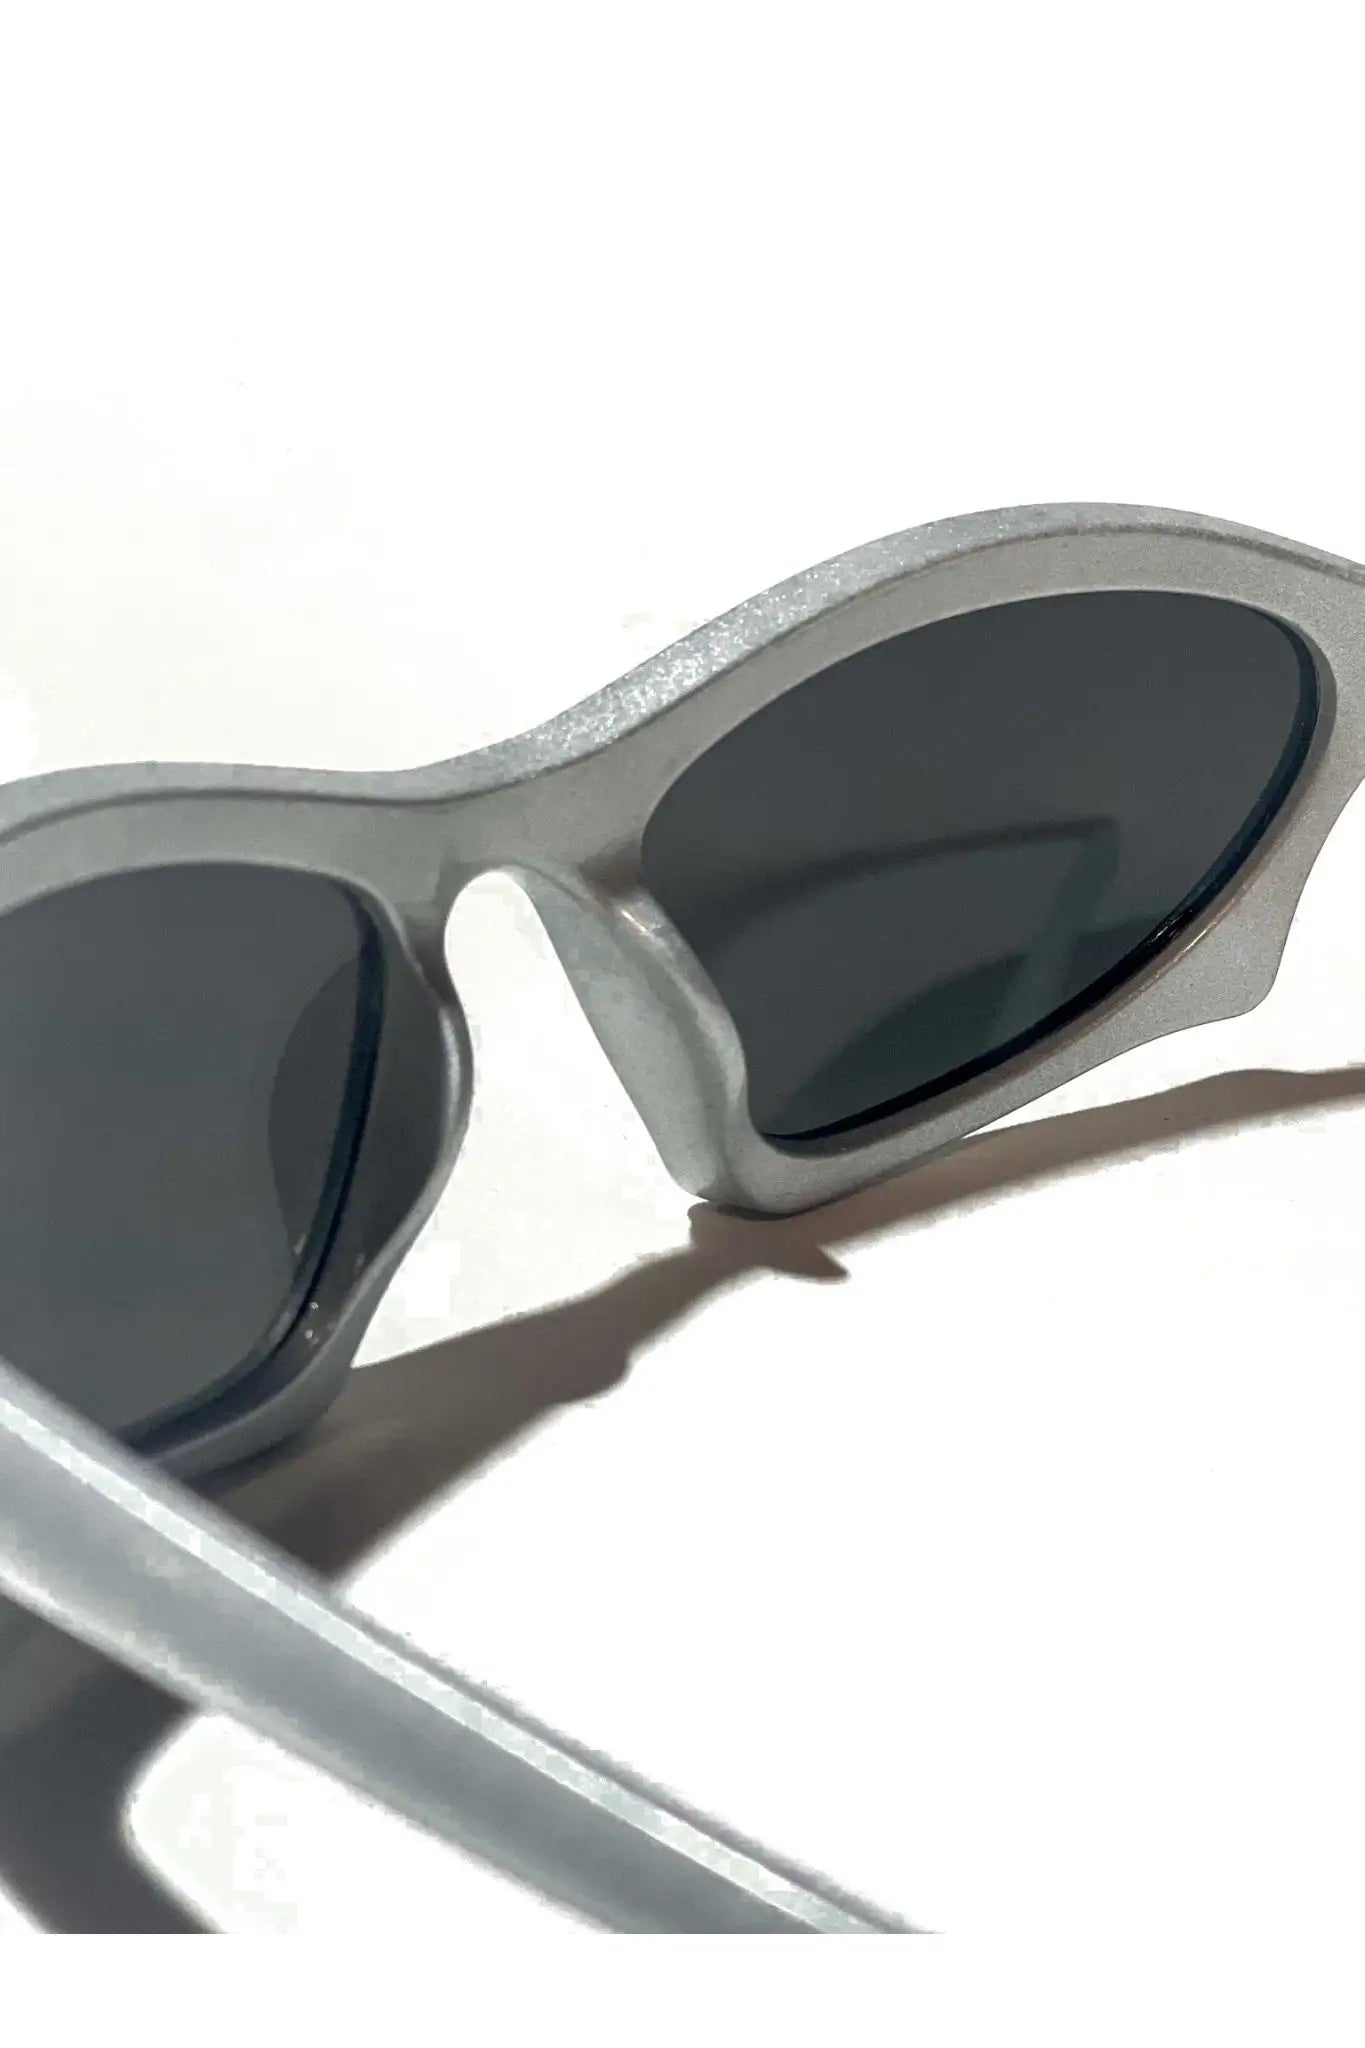 Techno Rave Futuristic Silver Shades: Rave Sonnenbrille innen